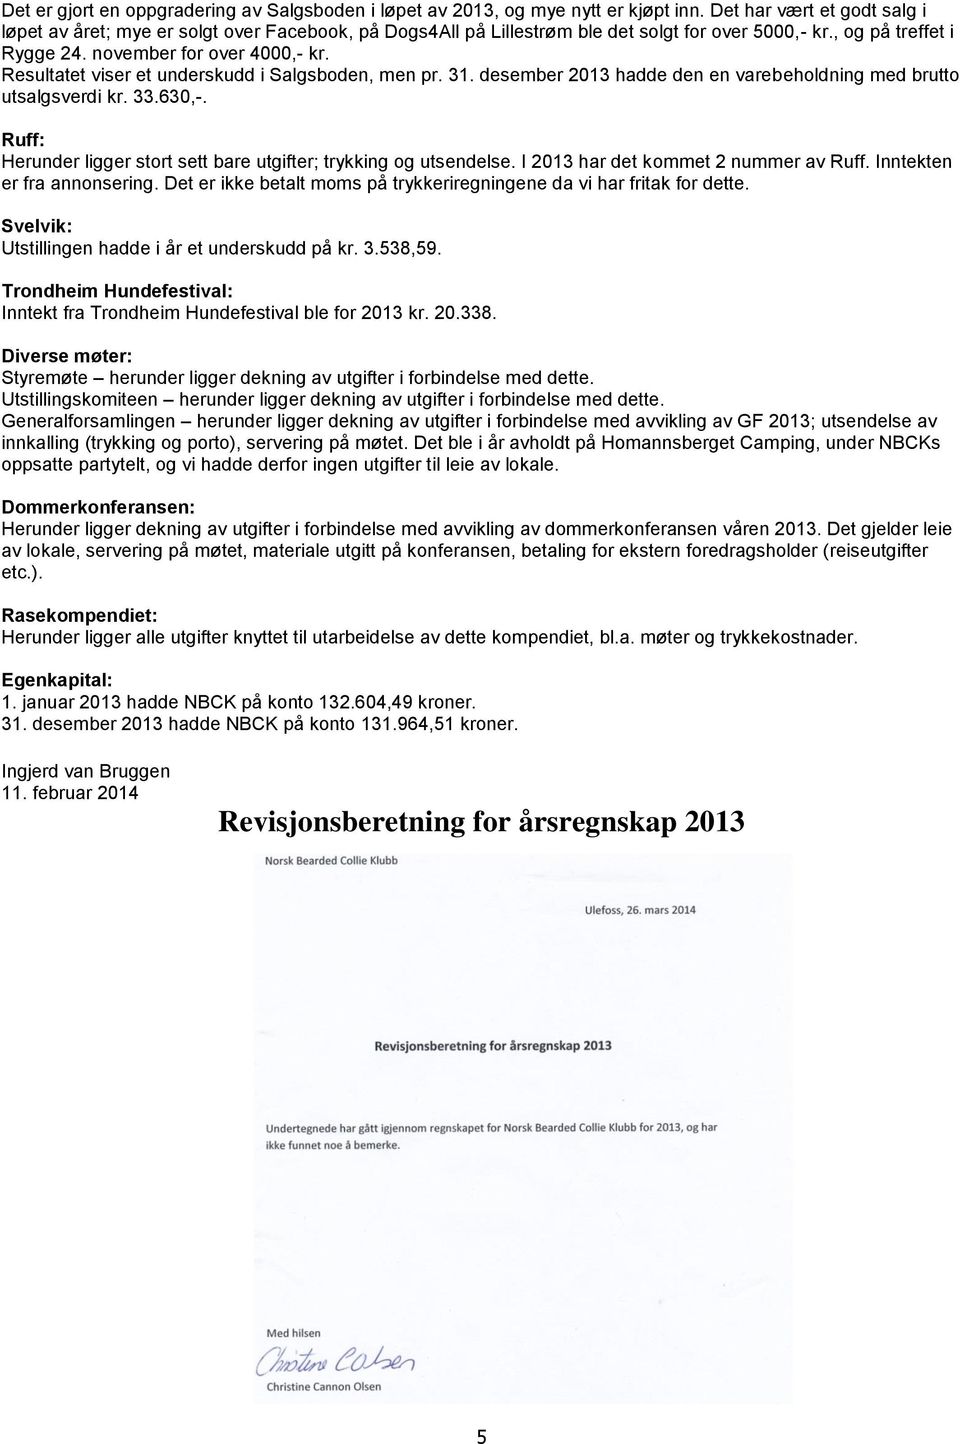 Resultatet viser et underskudd i Salgsboden, men pr. 31. desember 2013 hadde den en varebeholdning med brutto utsalgsverdi kr. 33.630,-.